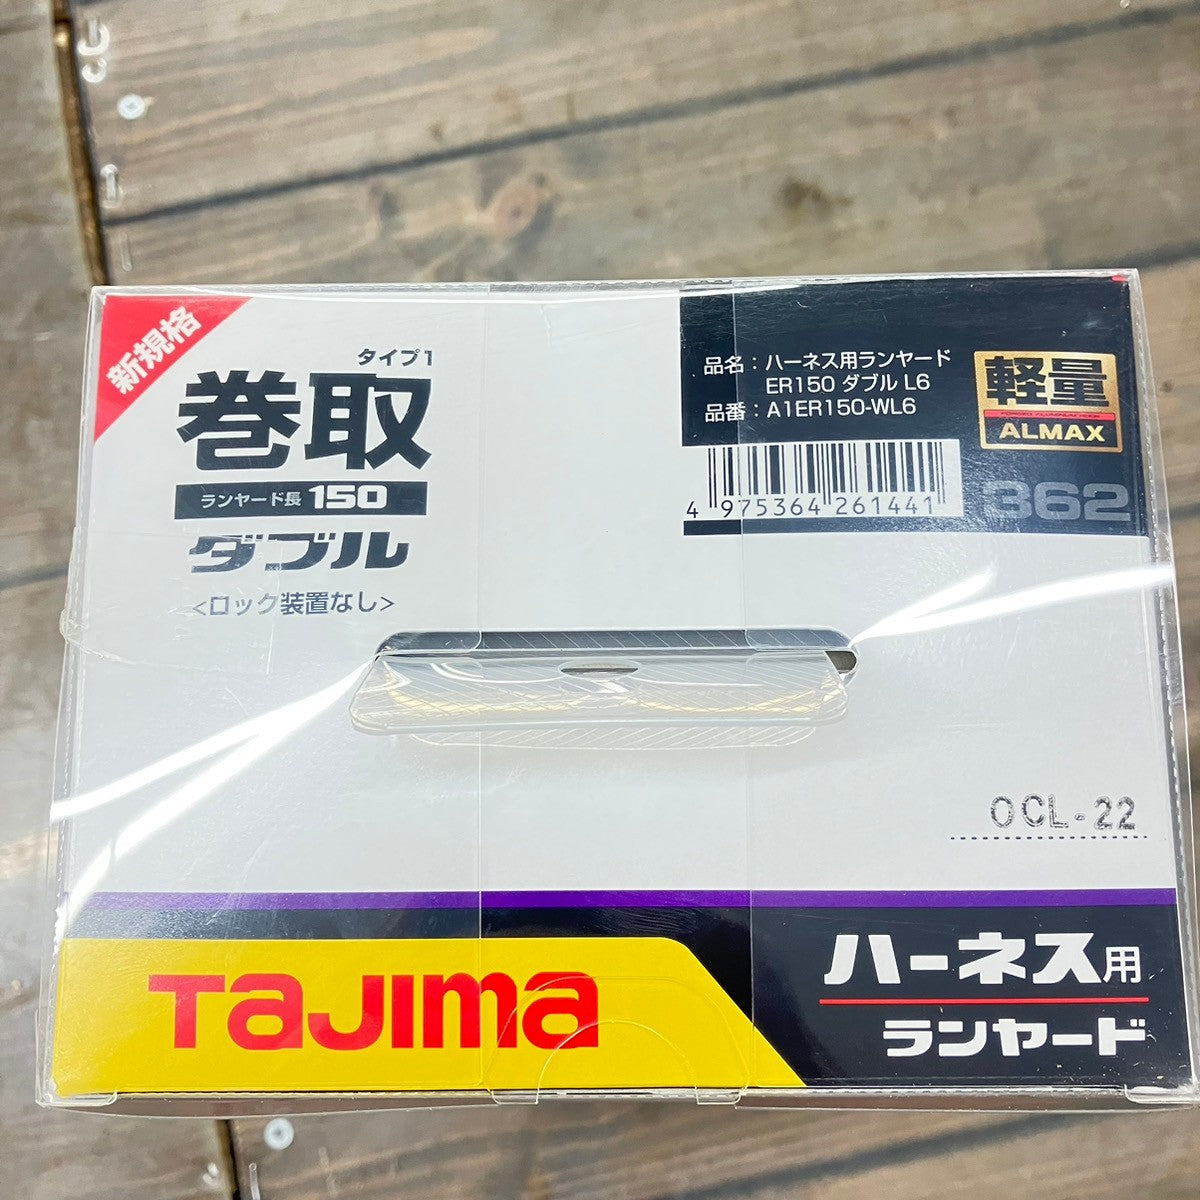 Tajima タジマ 新規格 ハーネス用ランヤード ER150 ダブルL6 巻取 A1ER150-WL6【戸田店】